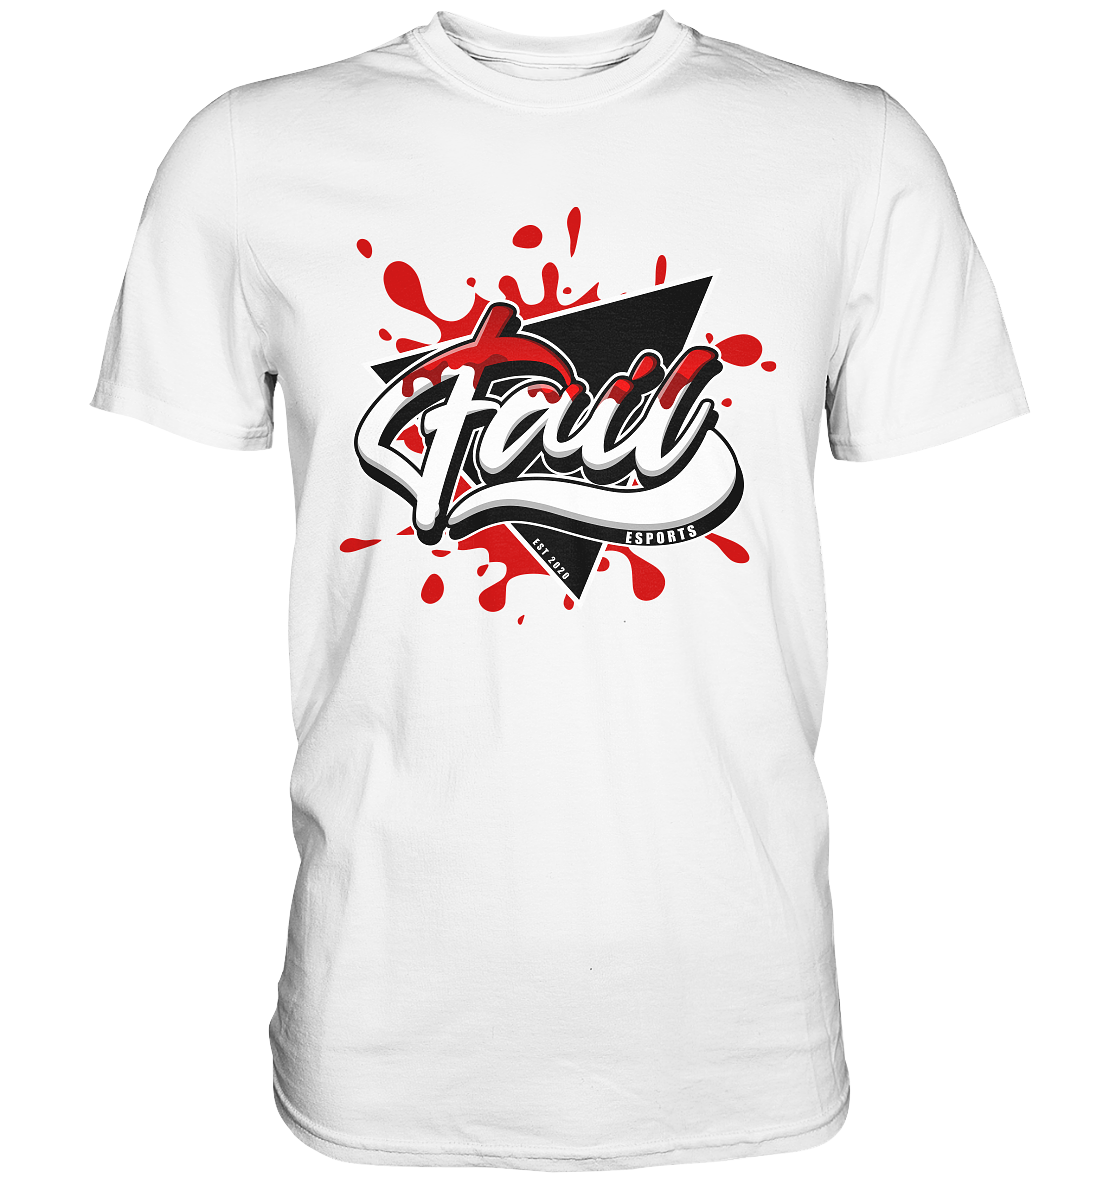 FAIL ESPORTS - Basic Shirt